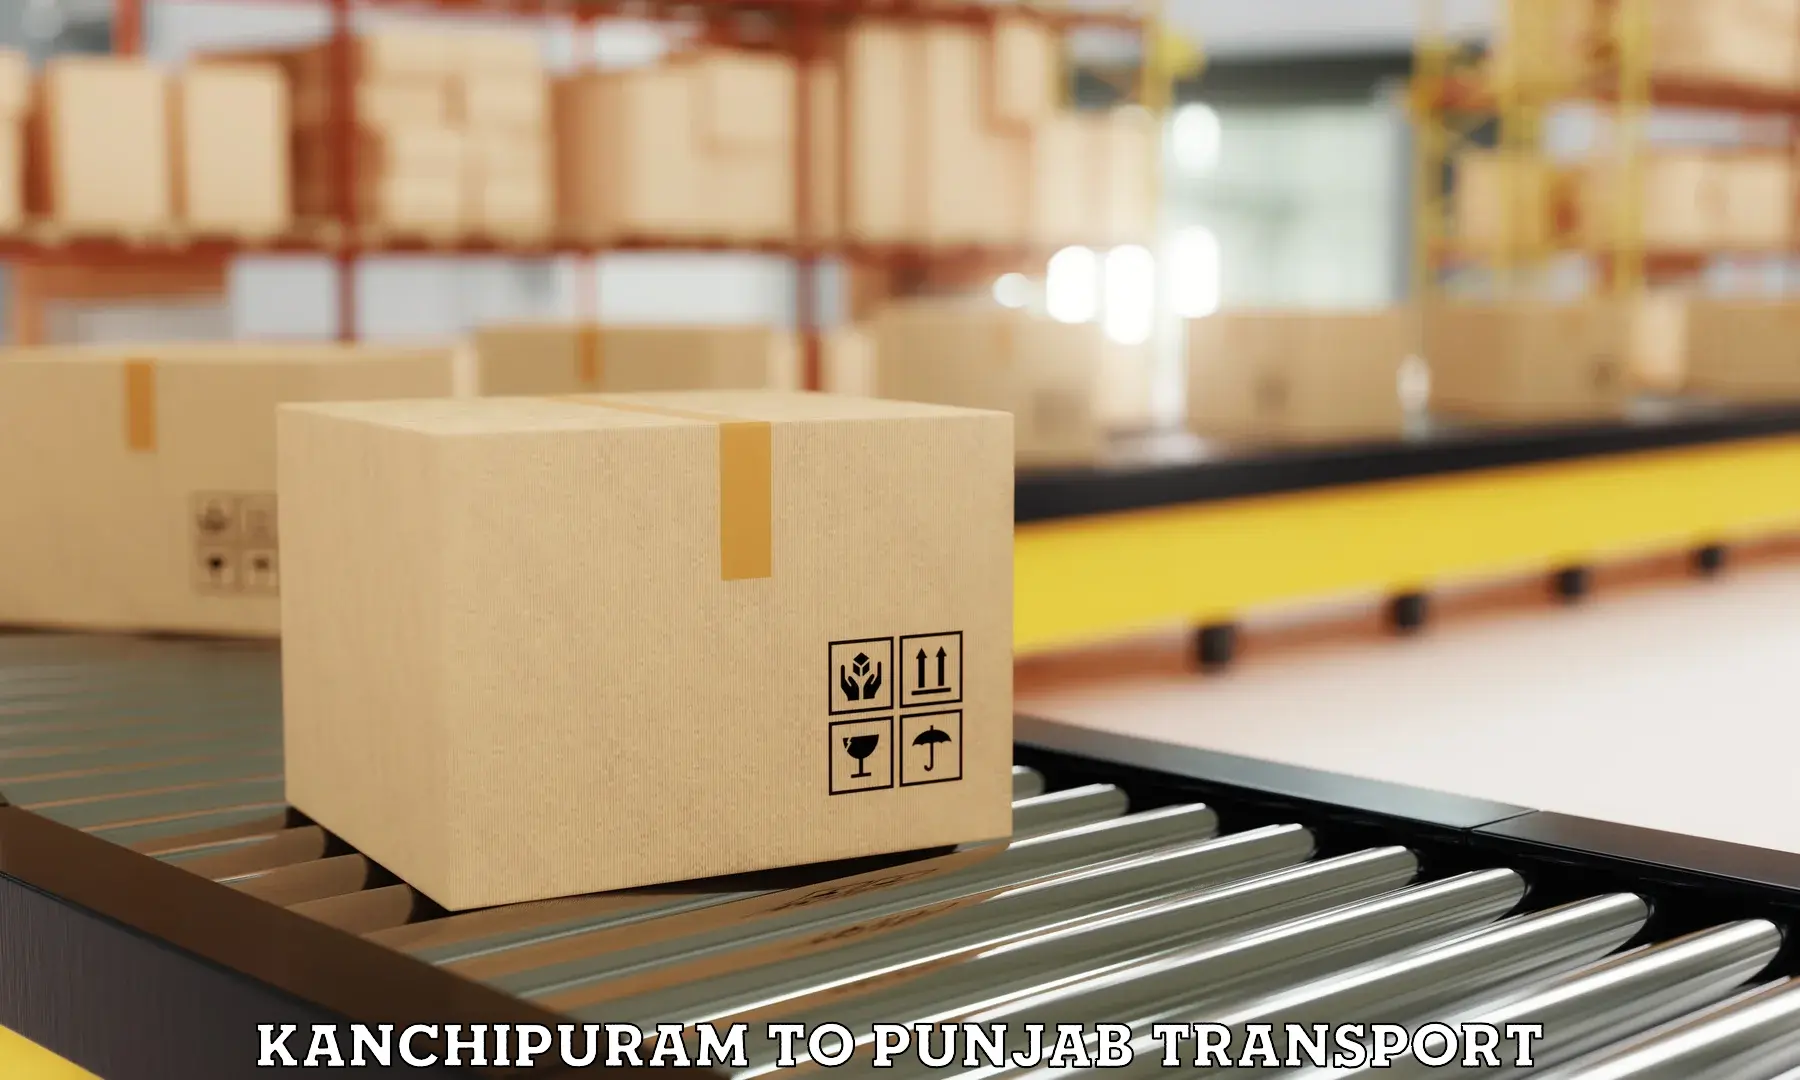 Daily parcel service transport Kanchipuram to Jalandhar